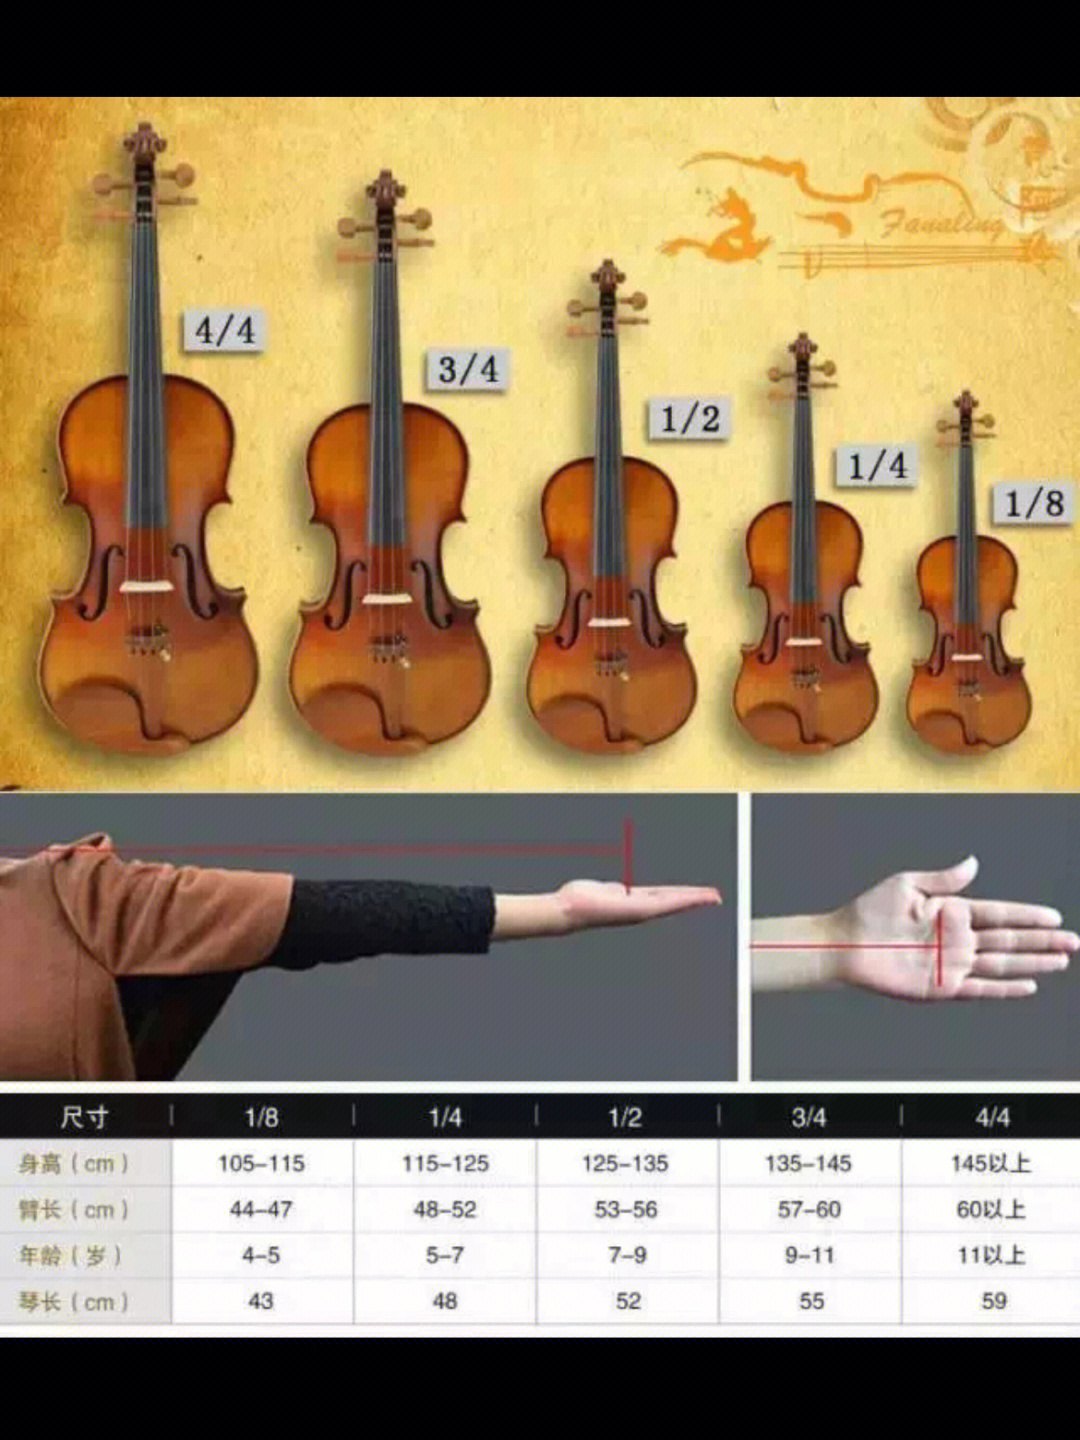 小提琴与身高对照表图片